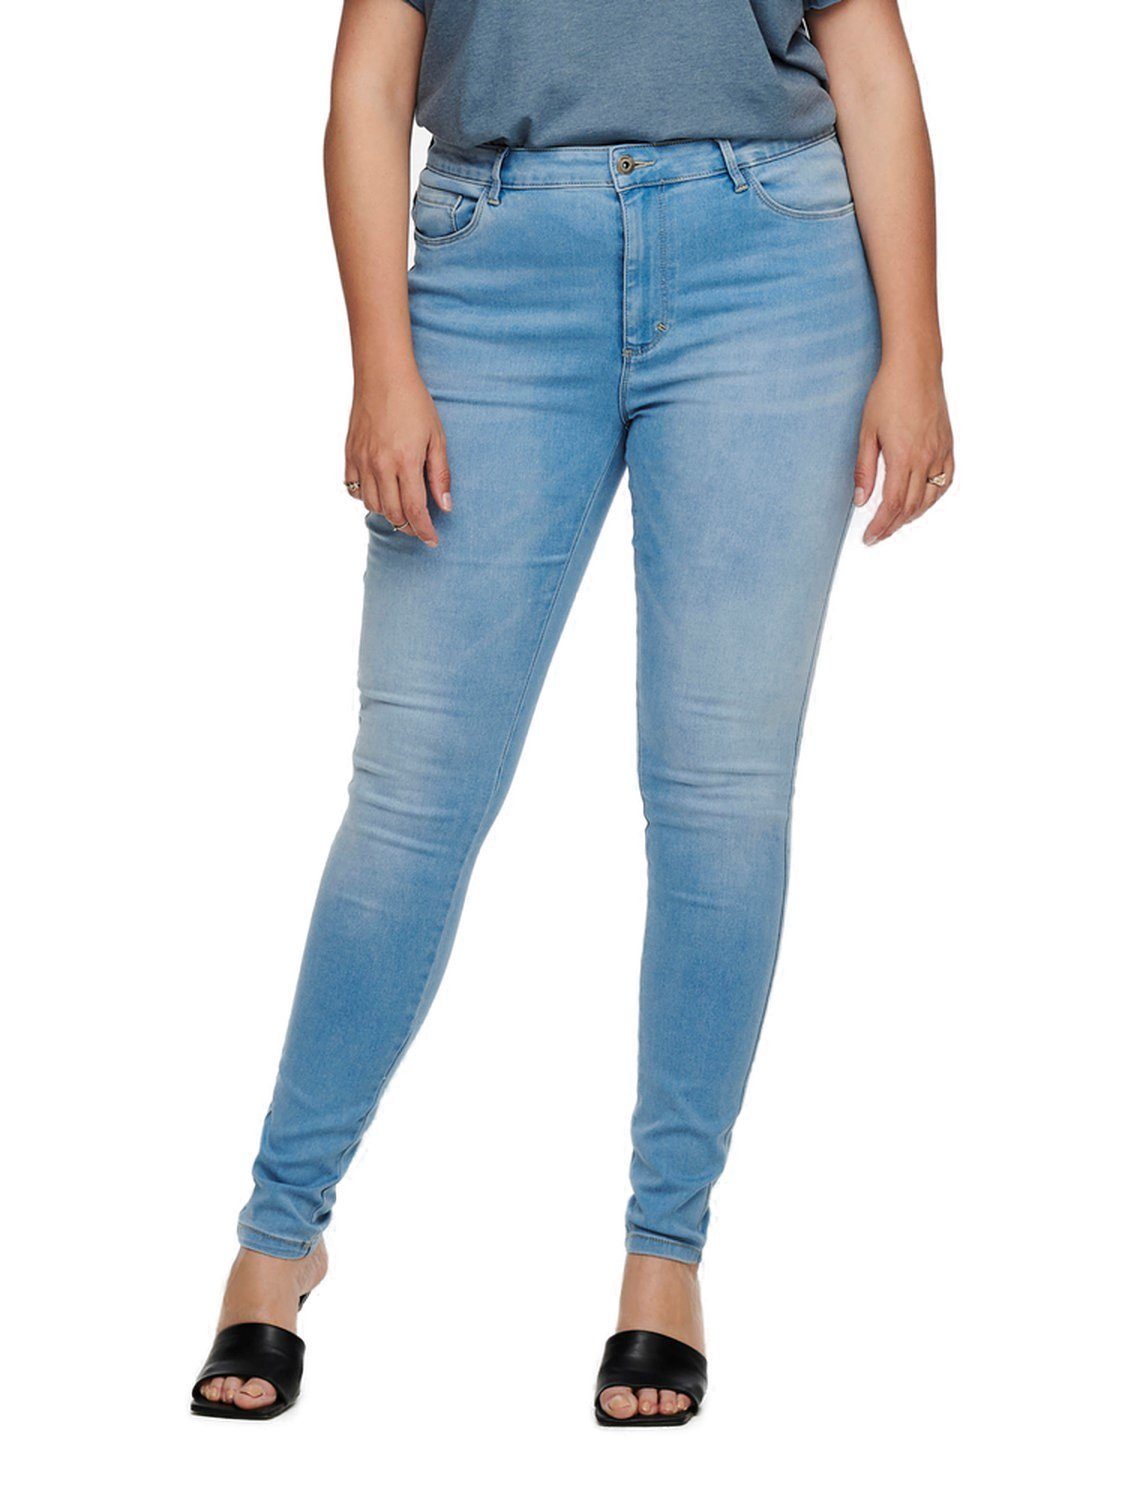 Skinny-fit-Jeans BJ13333 CARAUGUSTA in großen Stretch Größen mit ONLY